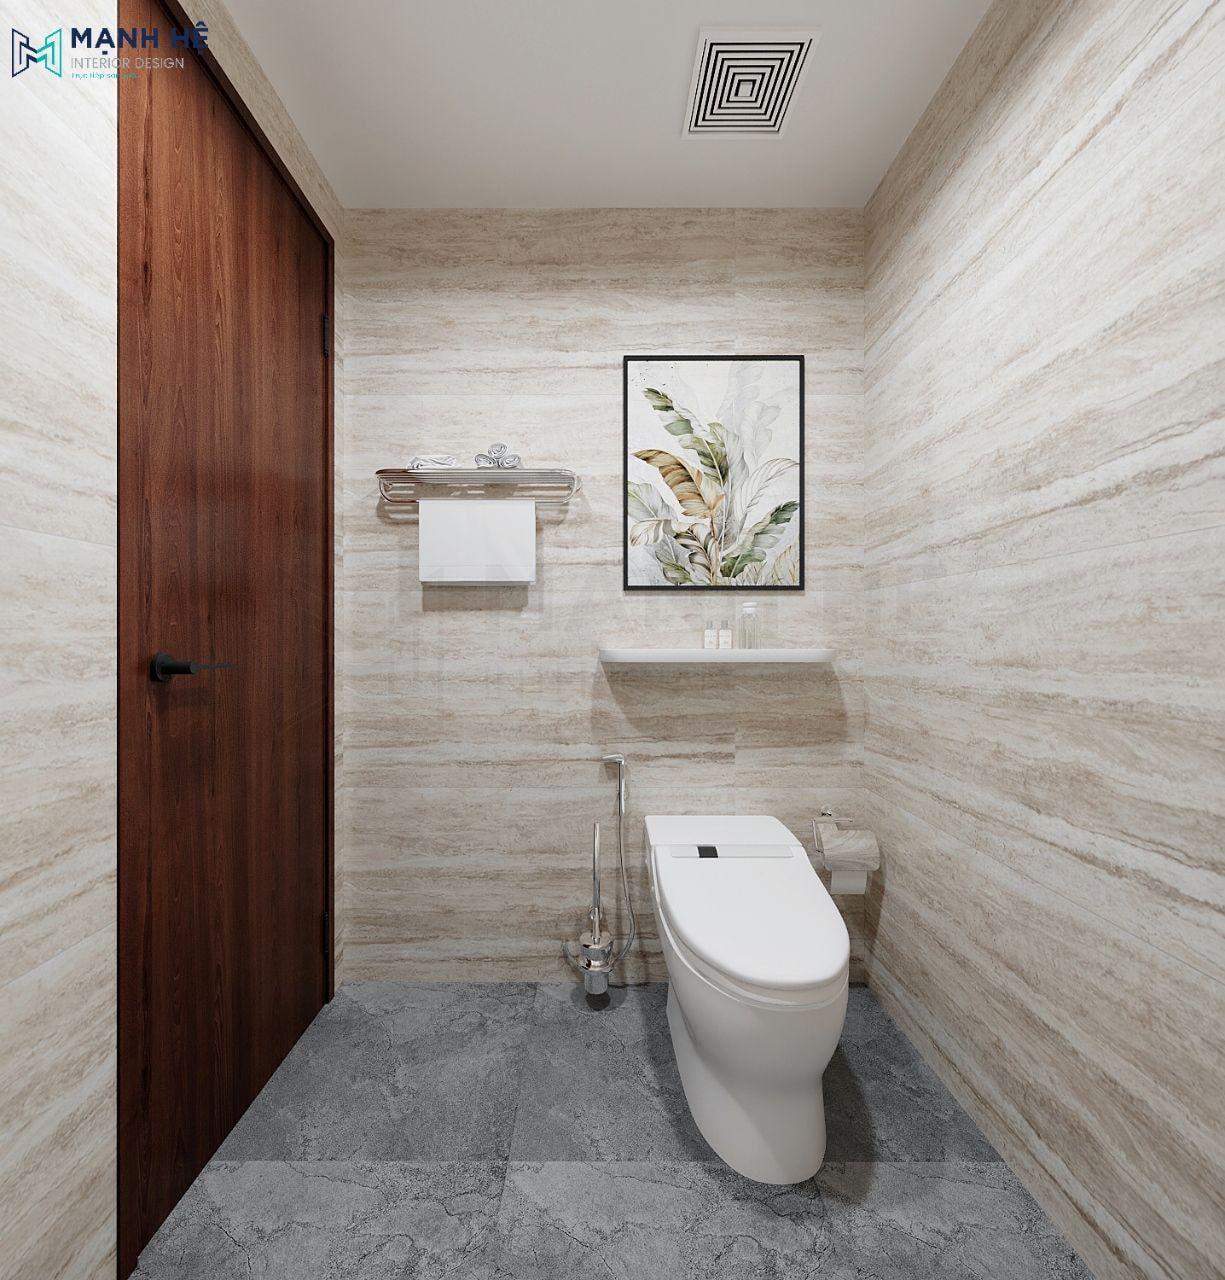 Nhà vệ sinh được thiết kế đơn giản gọn gàng và sạch sẽ